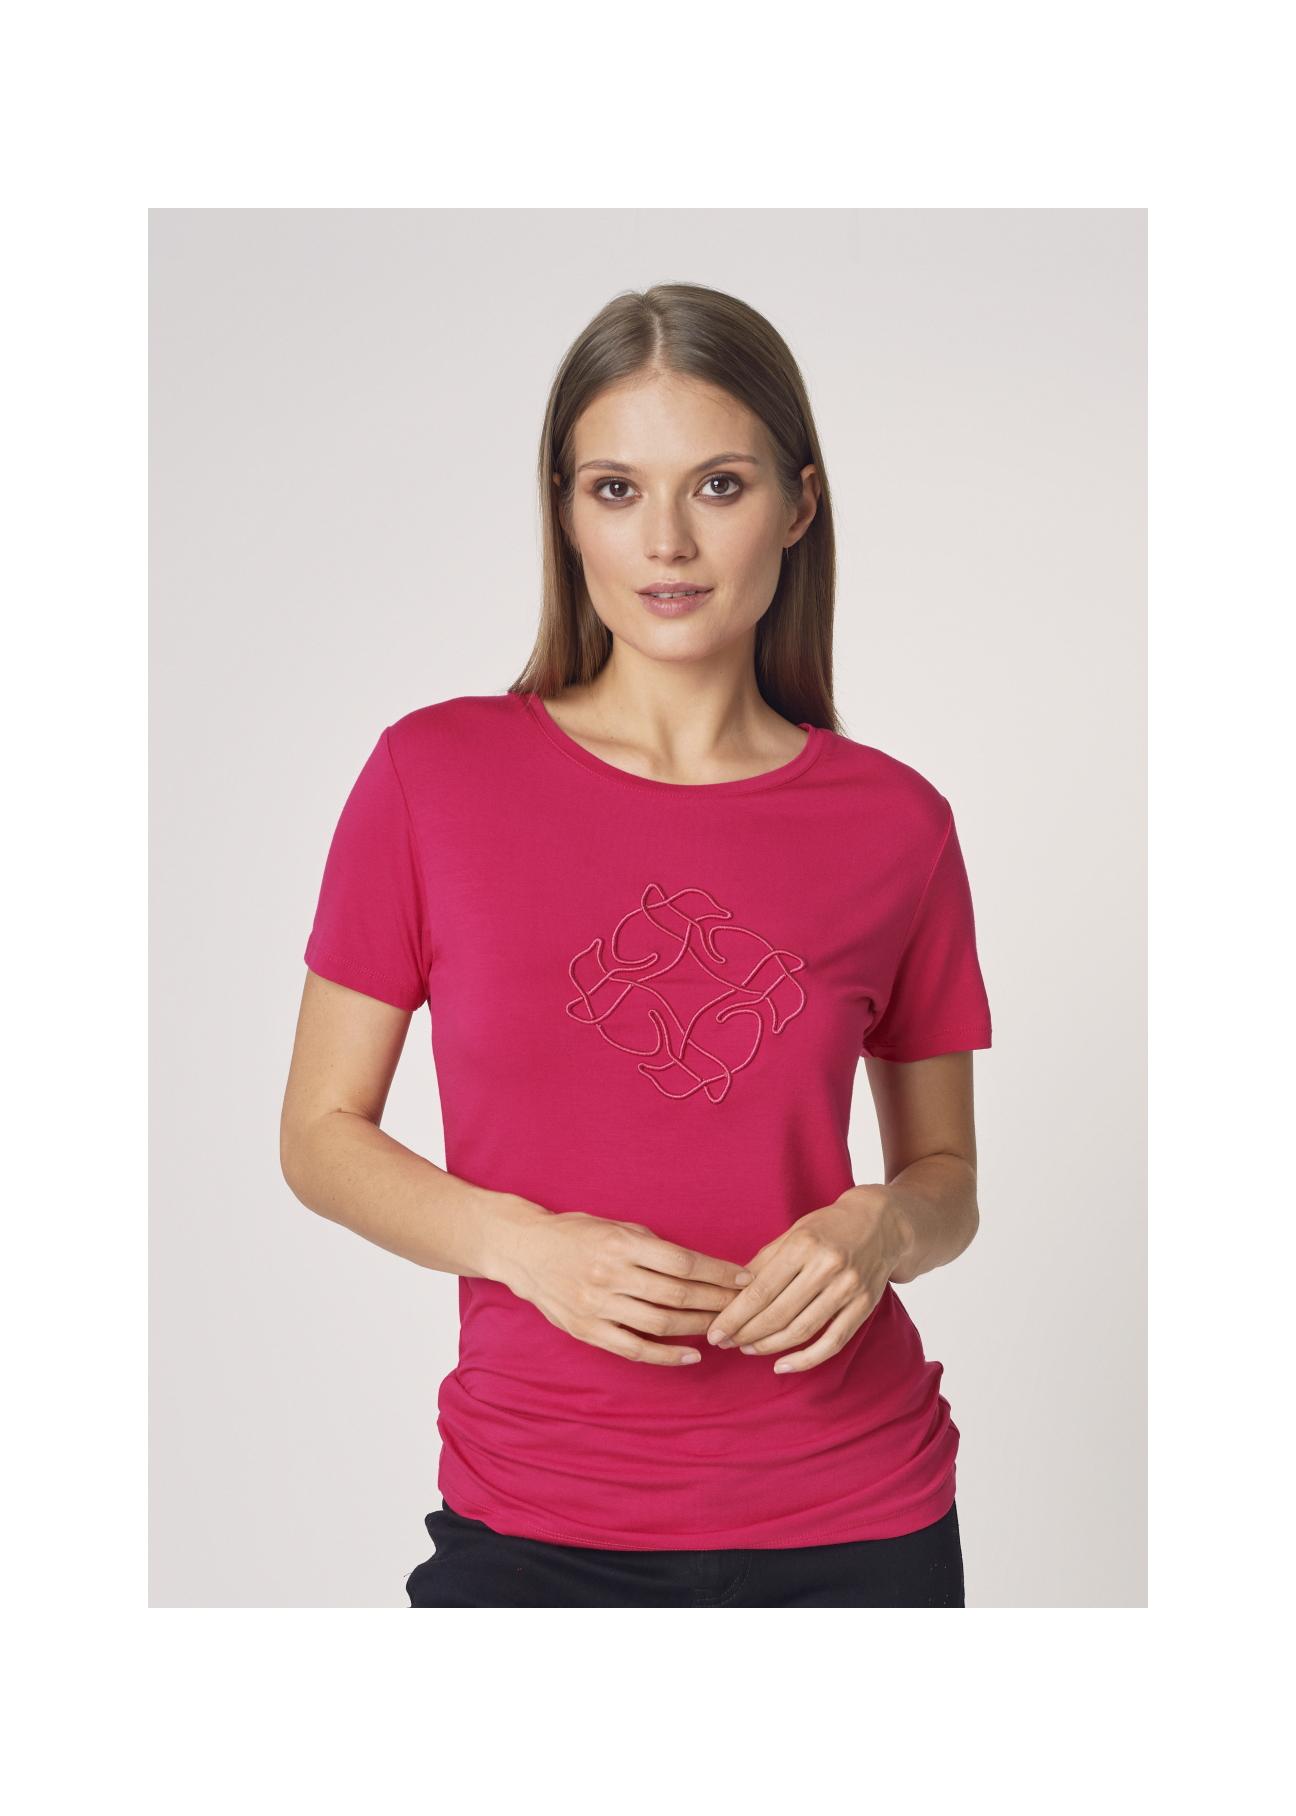 Różowy T-shirt damski z wilgą TSHDT-0078-31(Z21)